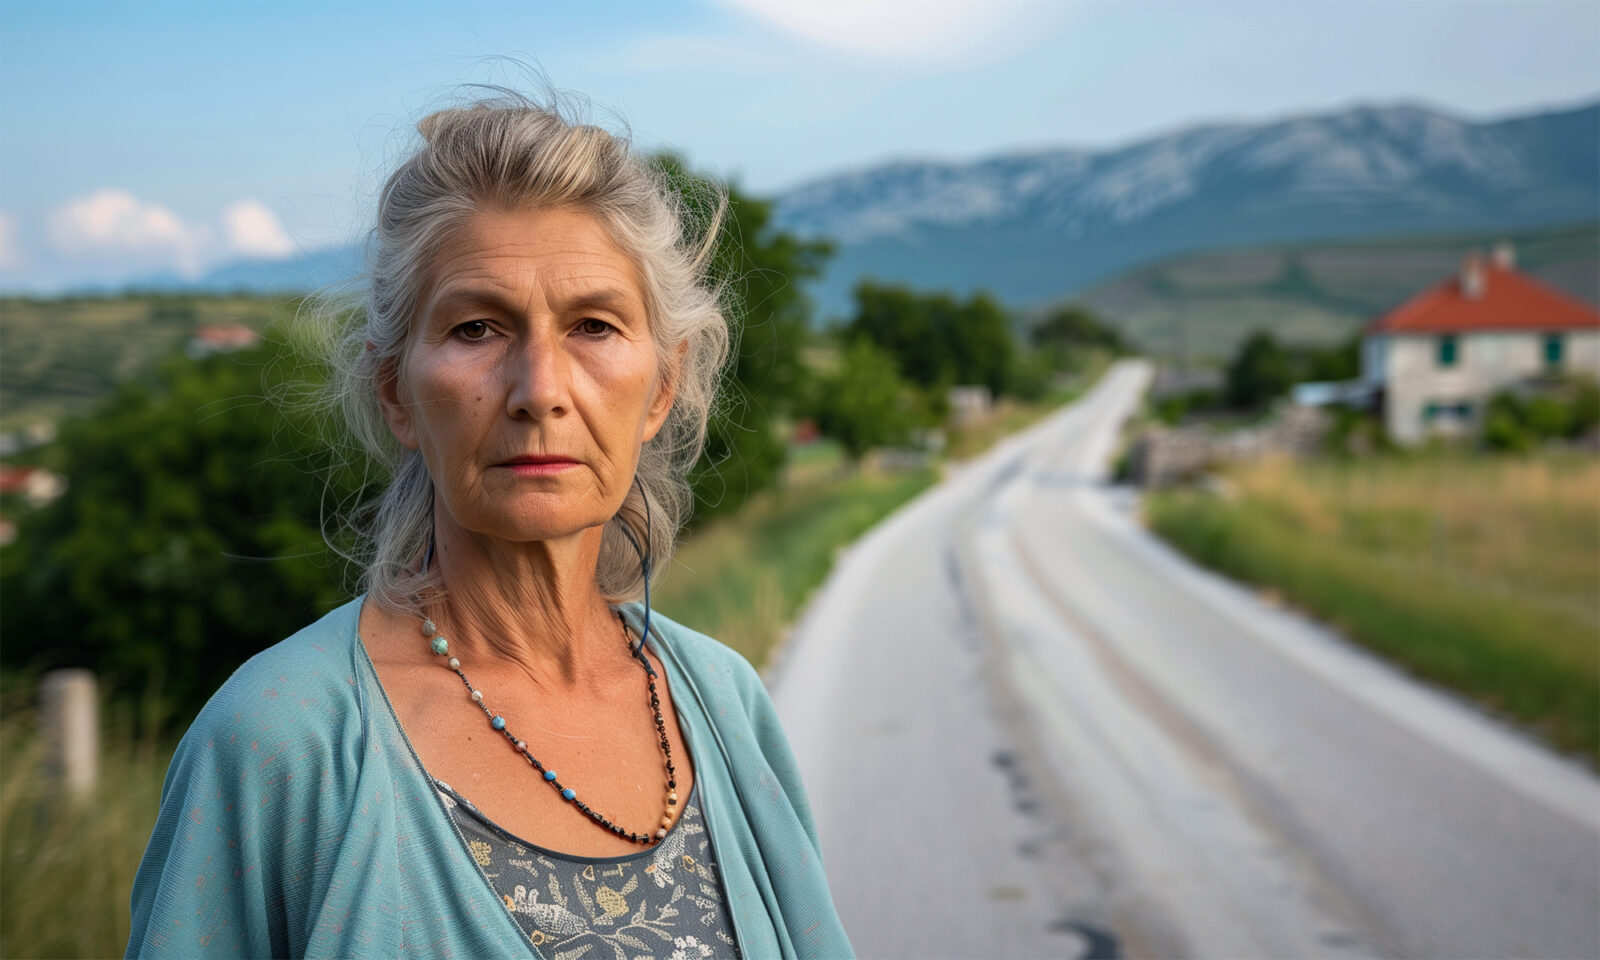 Udovica Željka, bivša državna službenica, umirovljena s 59 godina, osjeća se usamljeno nakon smrti supruga. Žudi za unučicama koje su daleko, te se pita o smislu života i kako prebroditi gubitak.